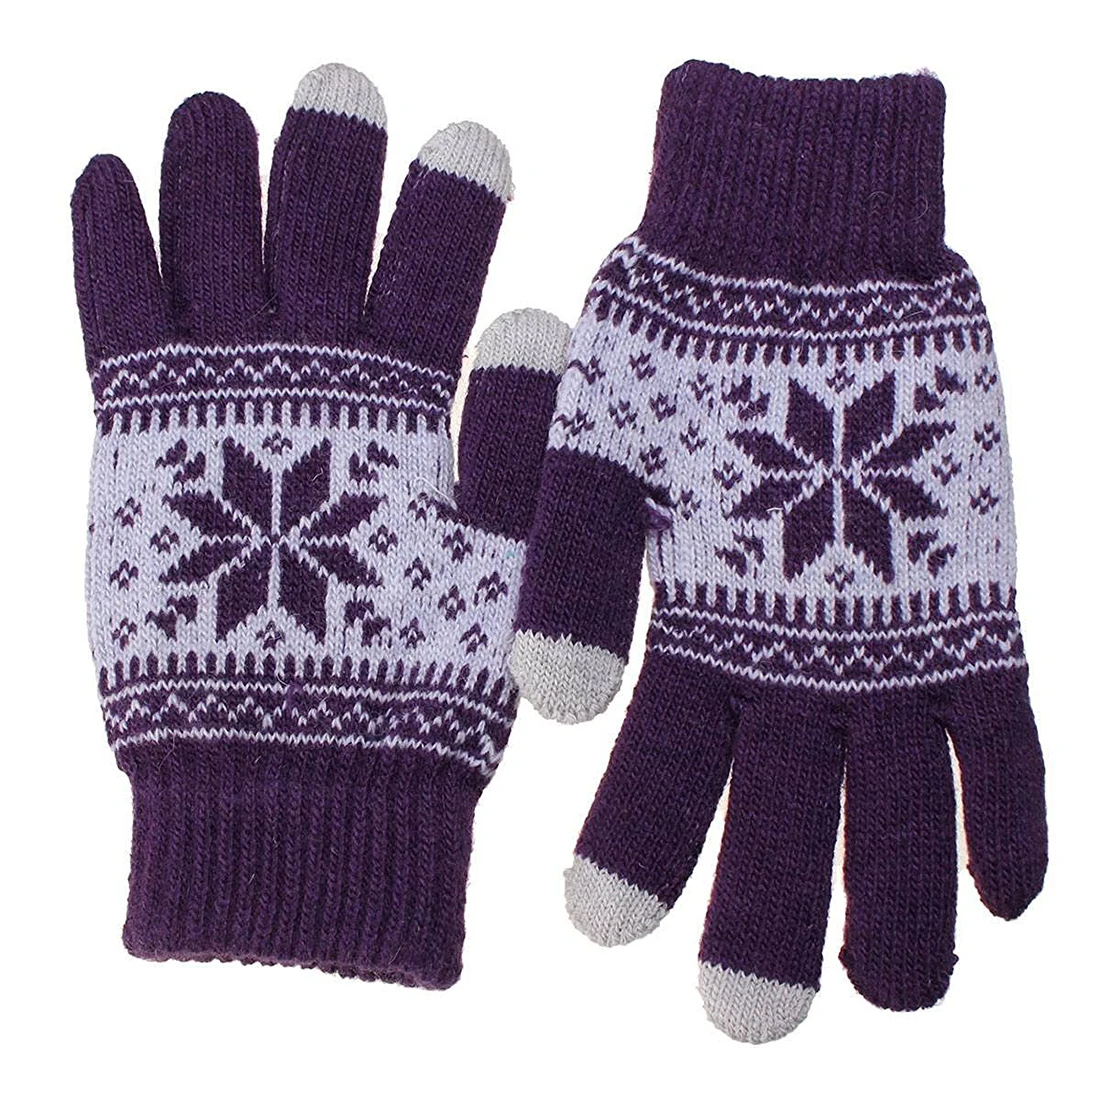 Теплые зимние перчатки для сенсорного экрана, женские вязаные шерстяные перчатки фиолетового цвета